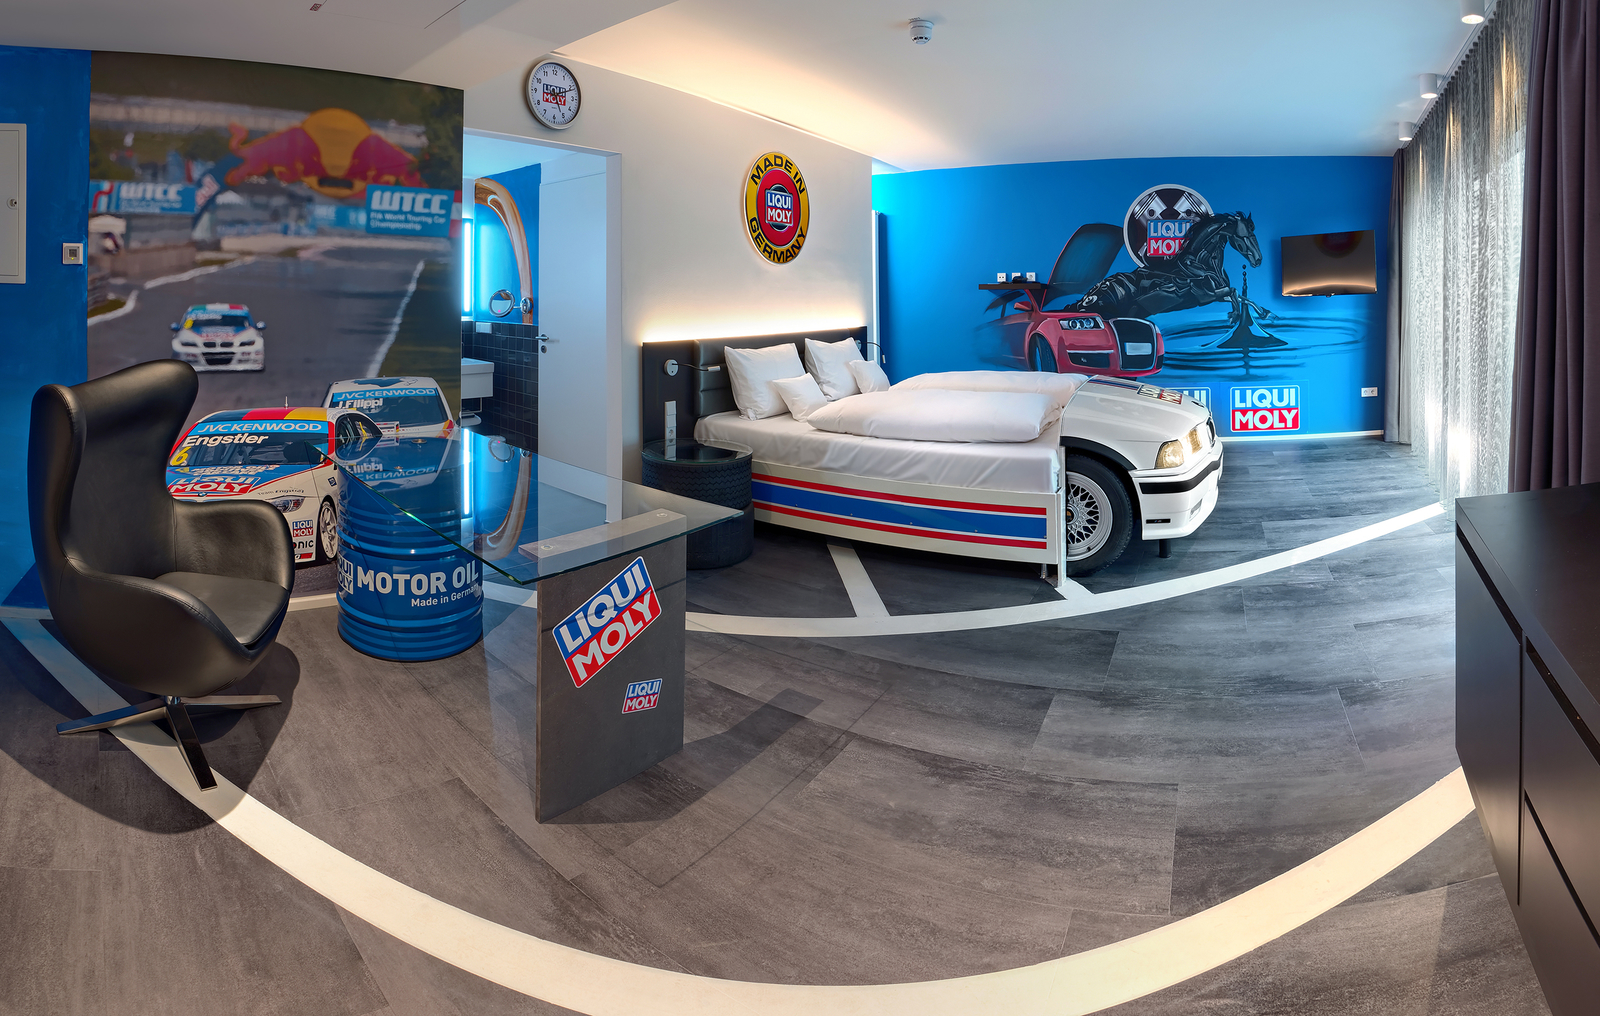 Liqui Moly Themenzimmer im V8 Hotel mit Autobett, Glasschreibtisch und Motivtapeten, die Autorennen zeigen